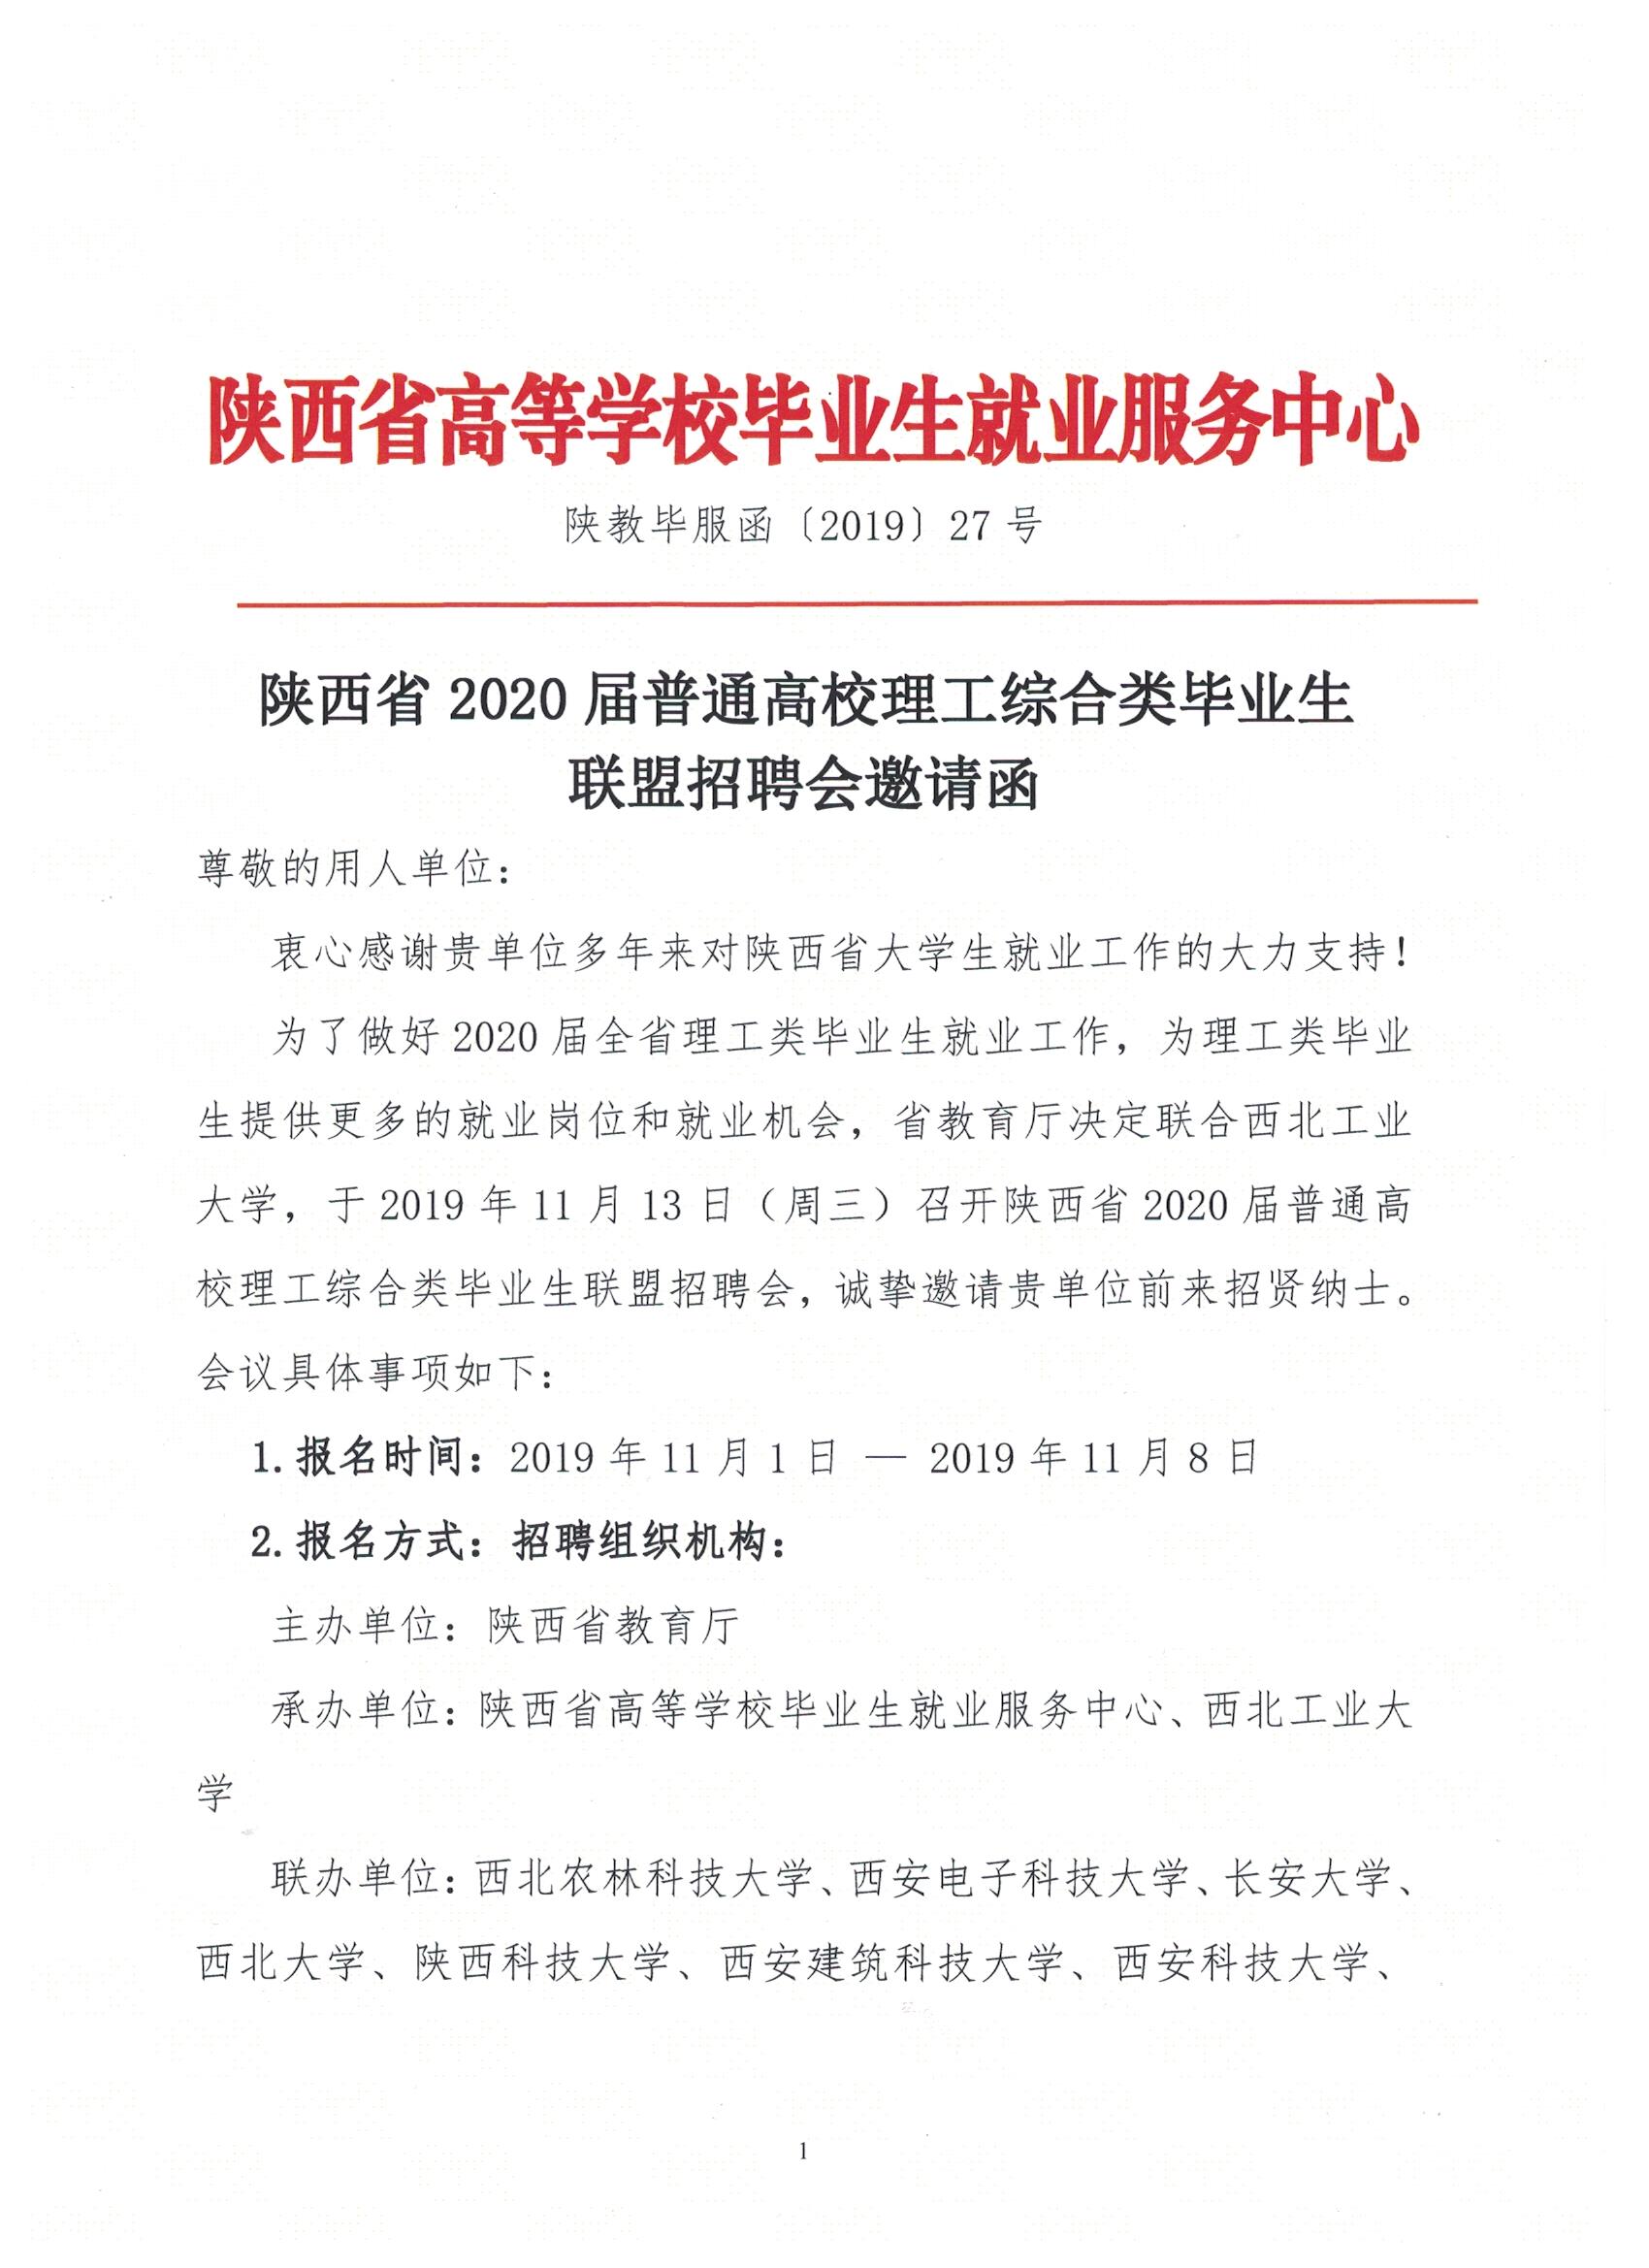 关于举办陕西省理工综合类联盟招聘会的邀请函 01.jpg